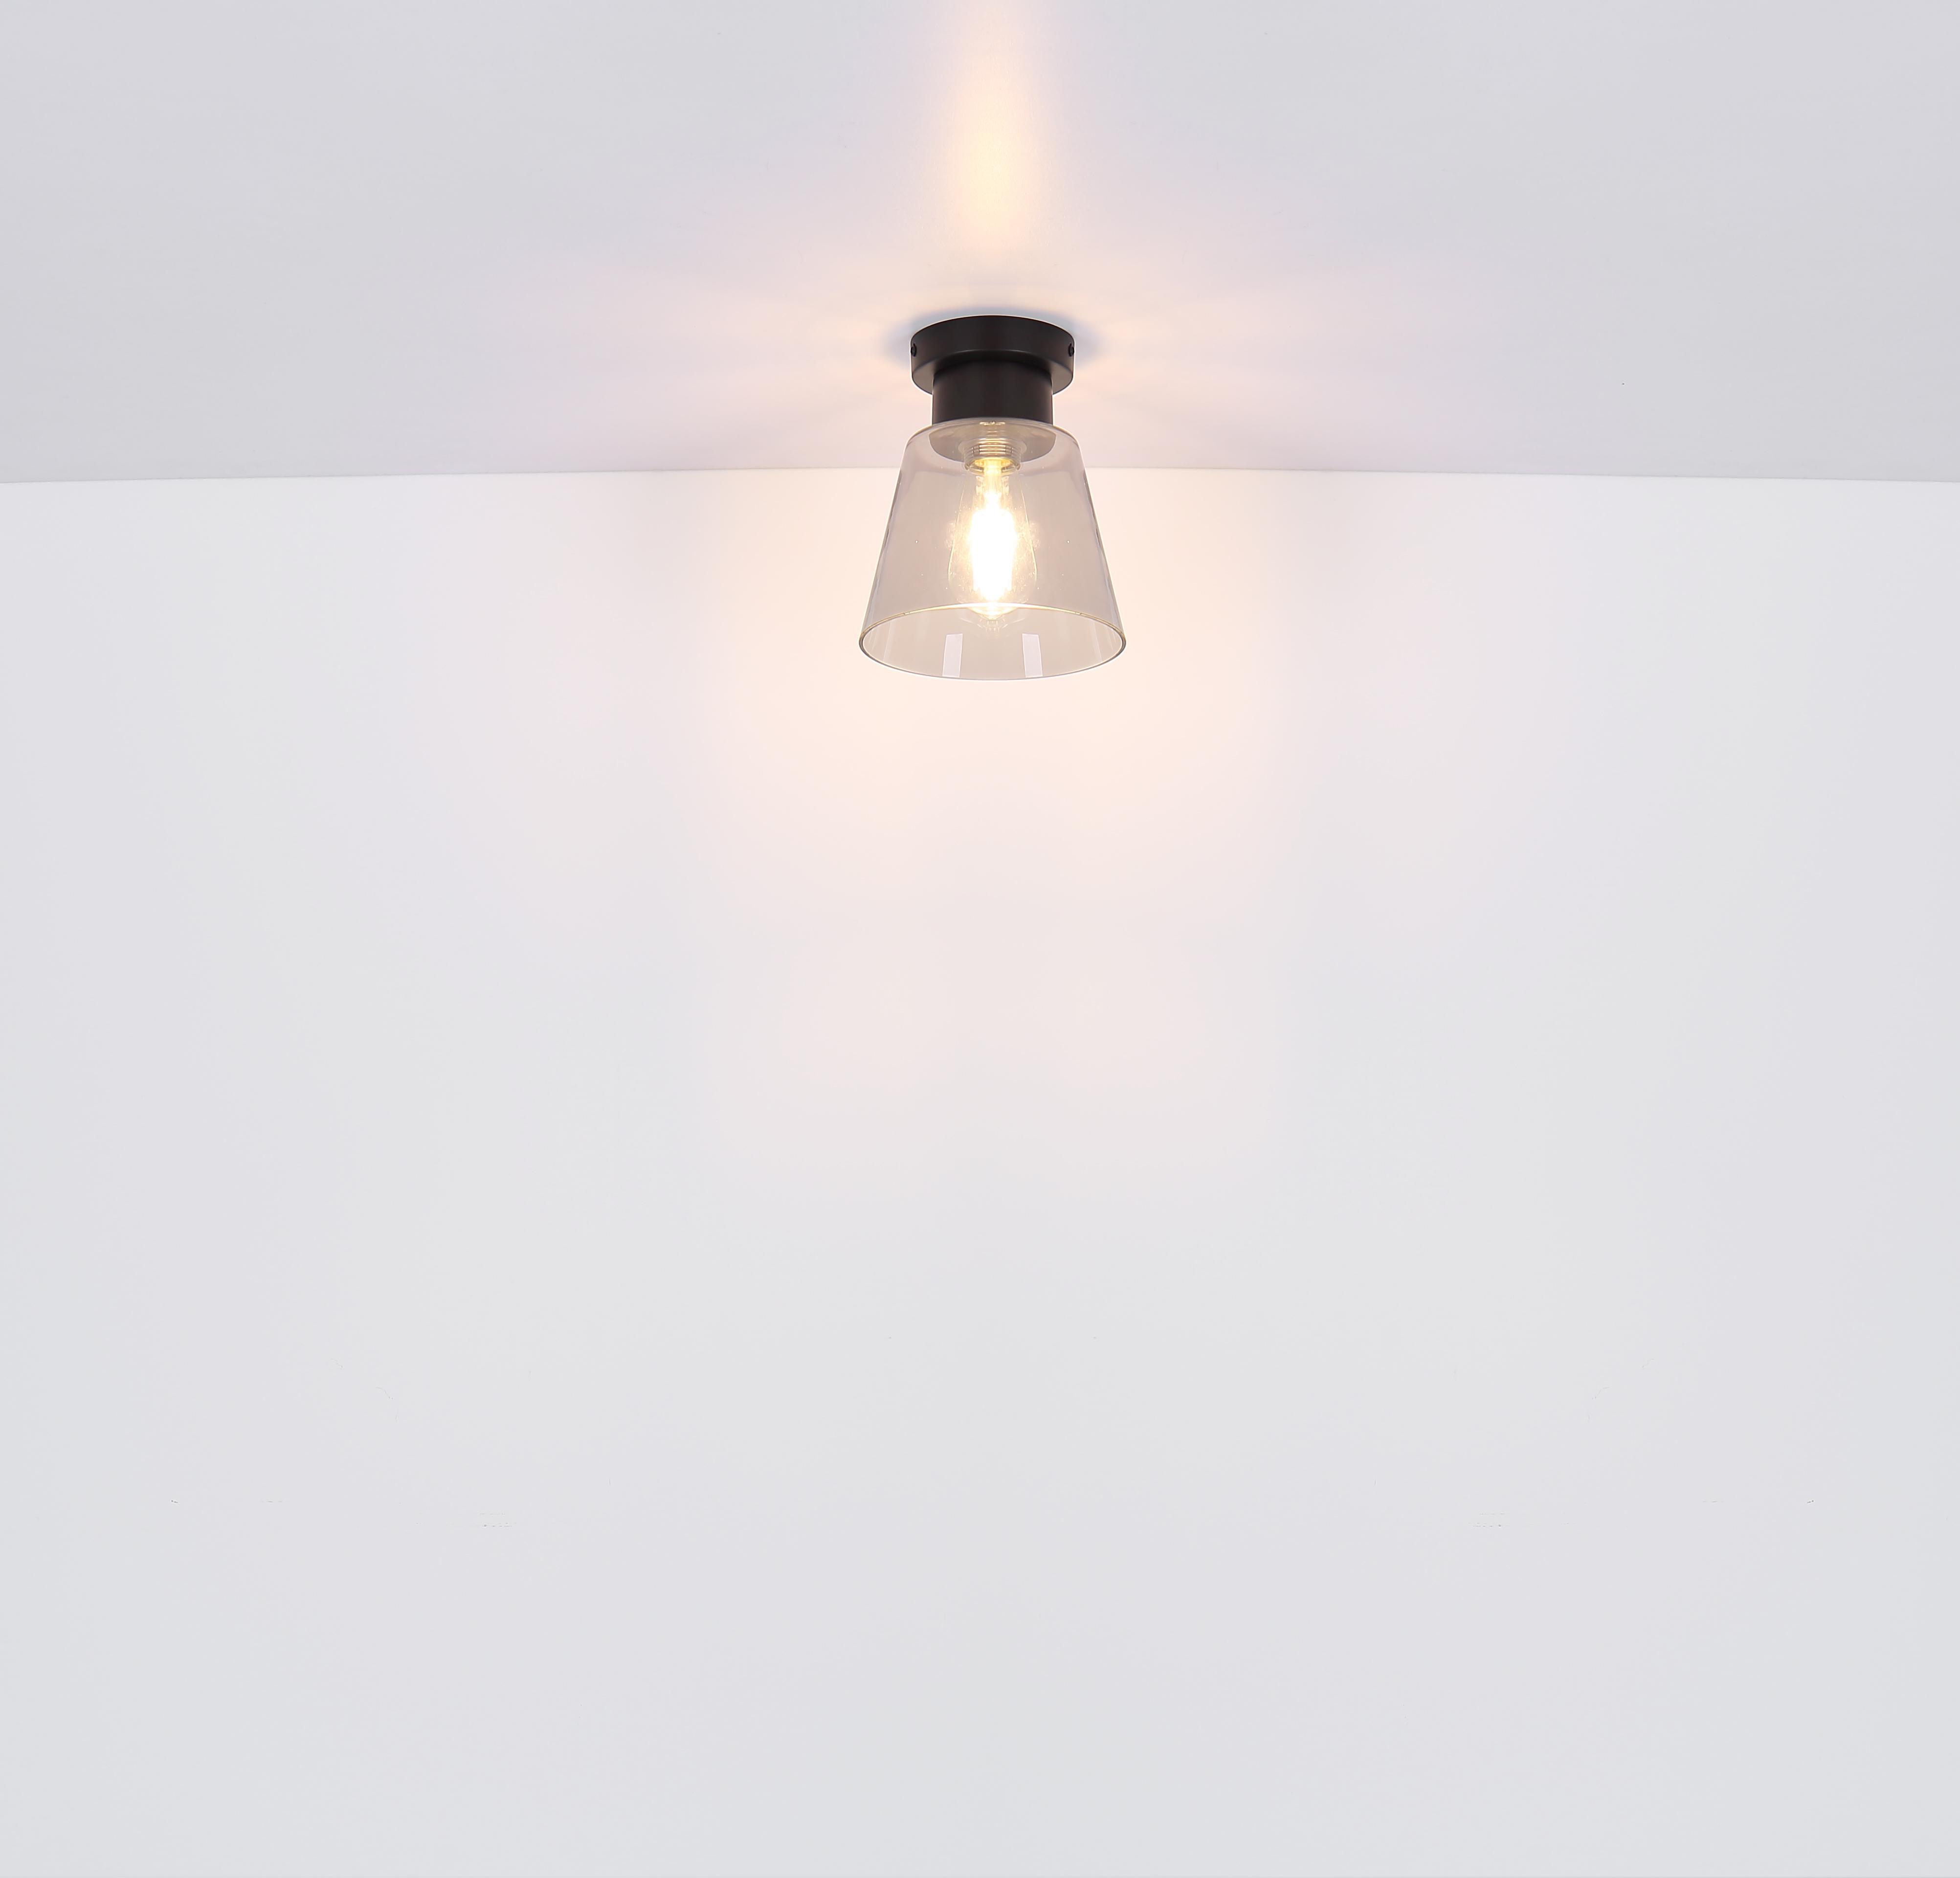 Lampadario a sospensione GLOBO GUMBA, E27, 120 cm, lampadina NON inclusa, GLB 15561H